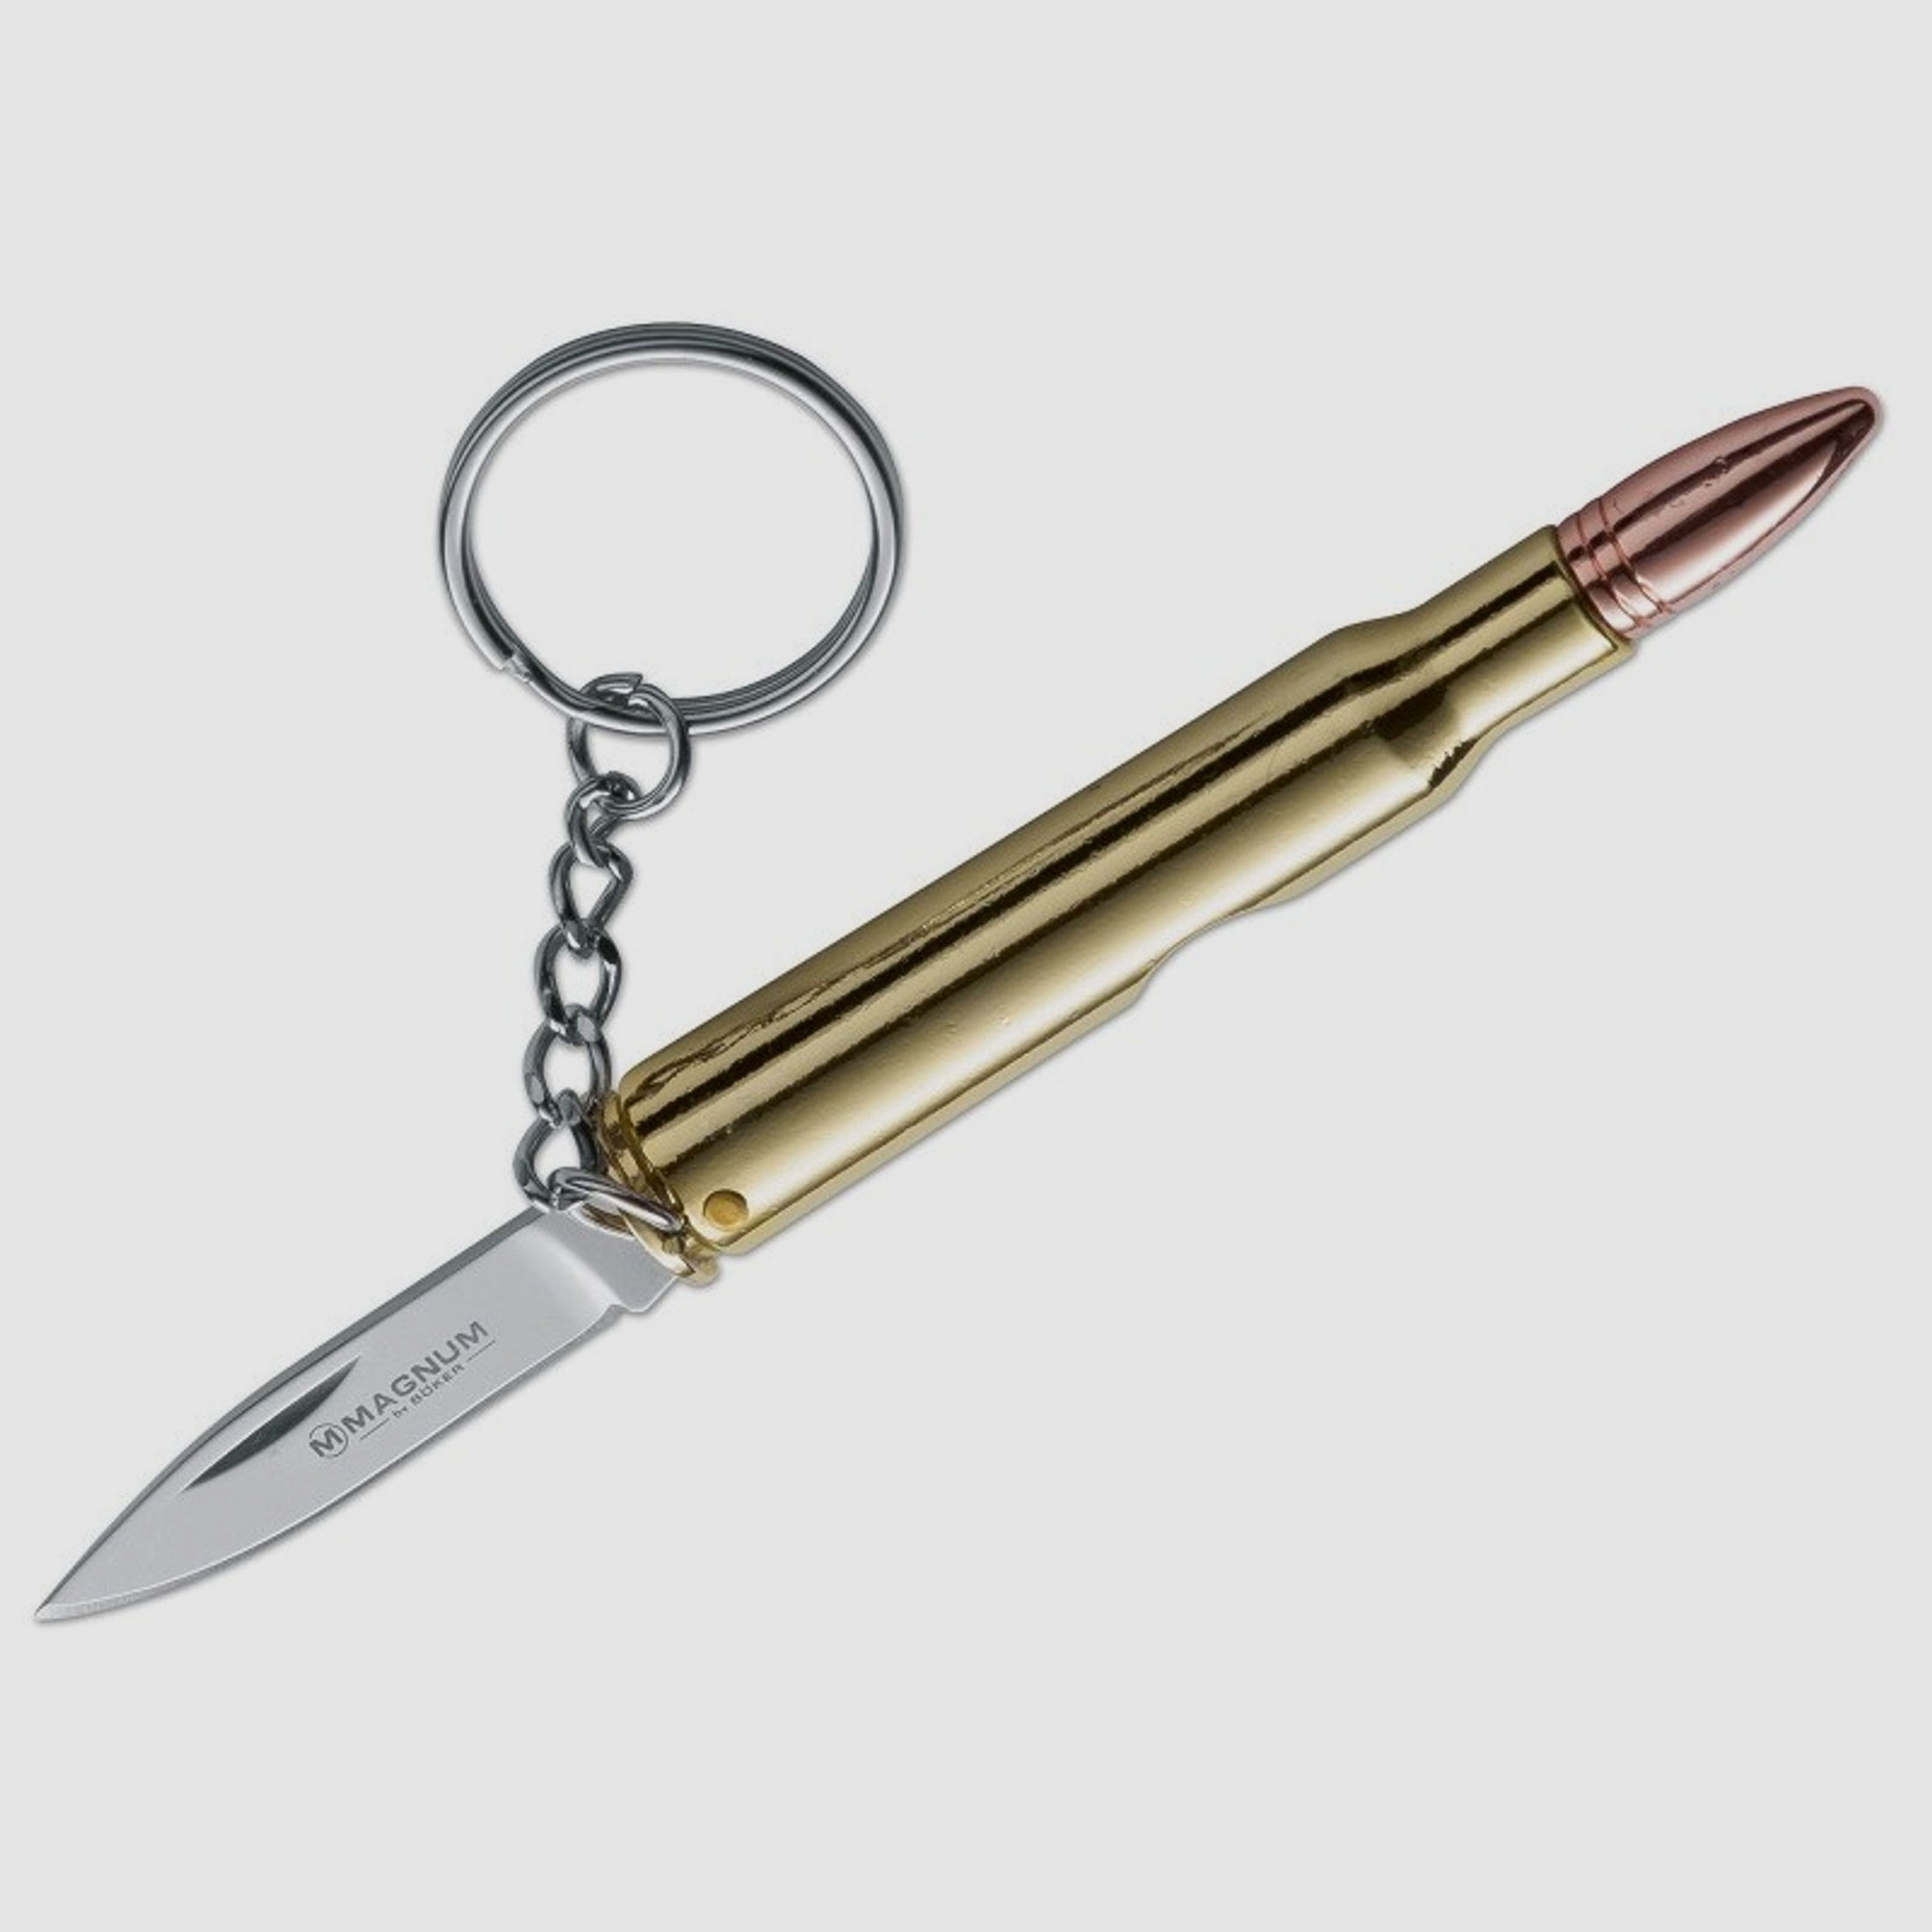 Magnum 30-06 Bullet knife